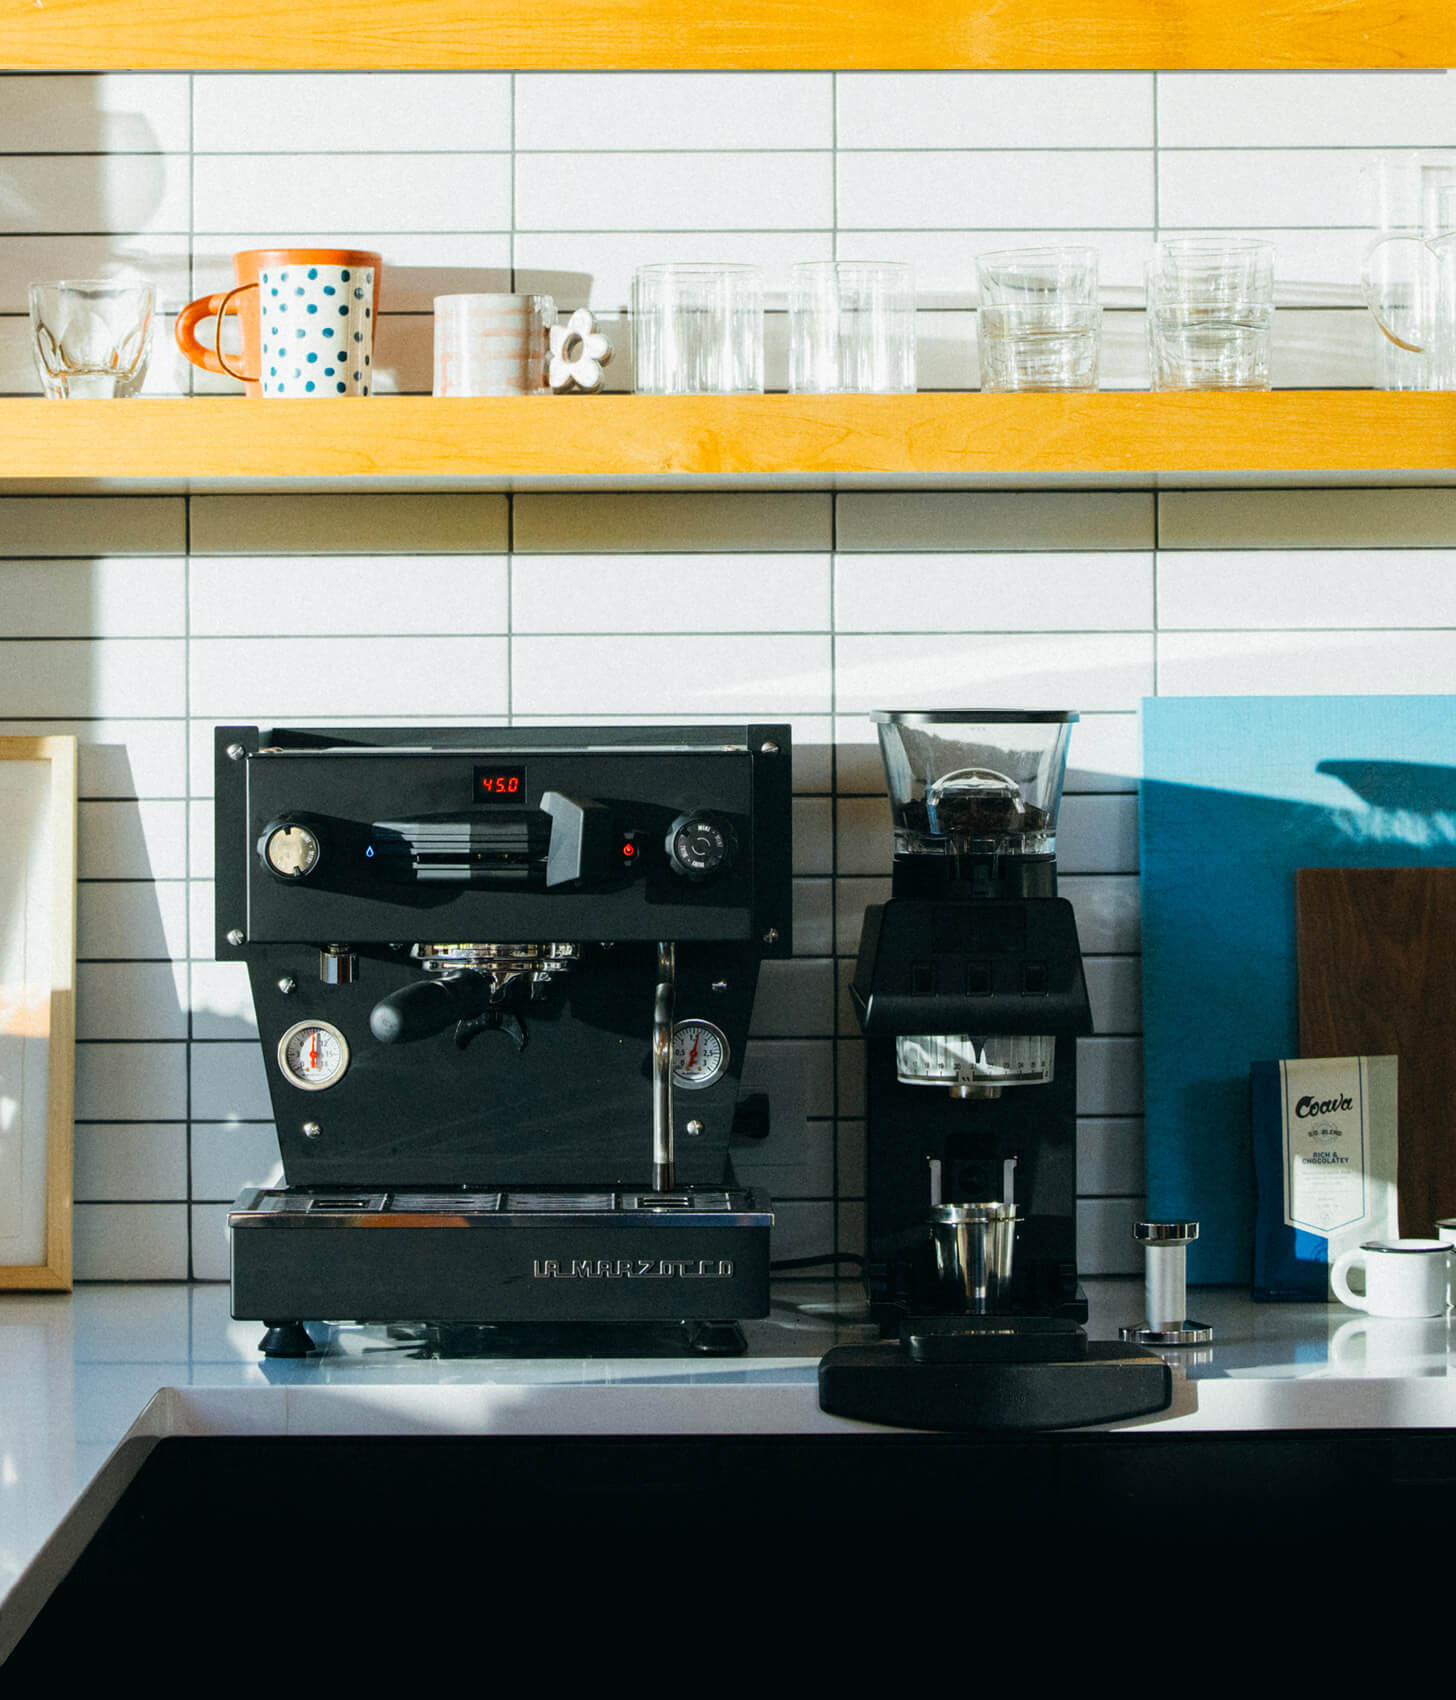 Black La Marzocco Linea Mini R espresso machine and black Pico coffee grinder on a white countertop and yellow shelves